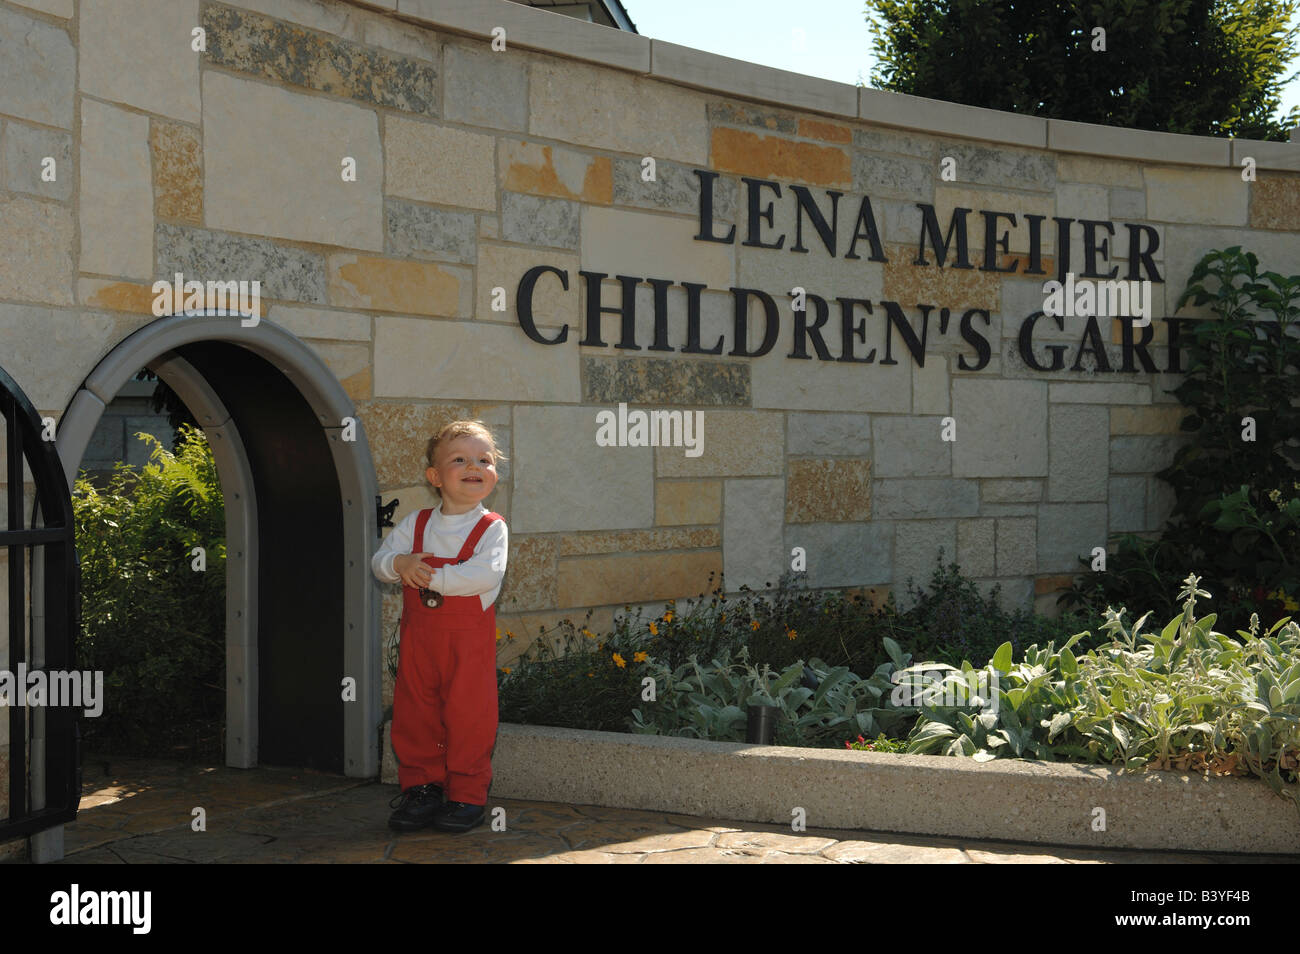 Lena Meijer Children's Garden, Frederik Meijer Gardens,Grand Rapids, Michigan (PR) (MR) Stock Photo